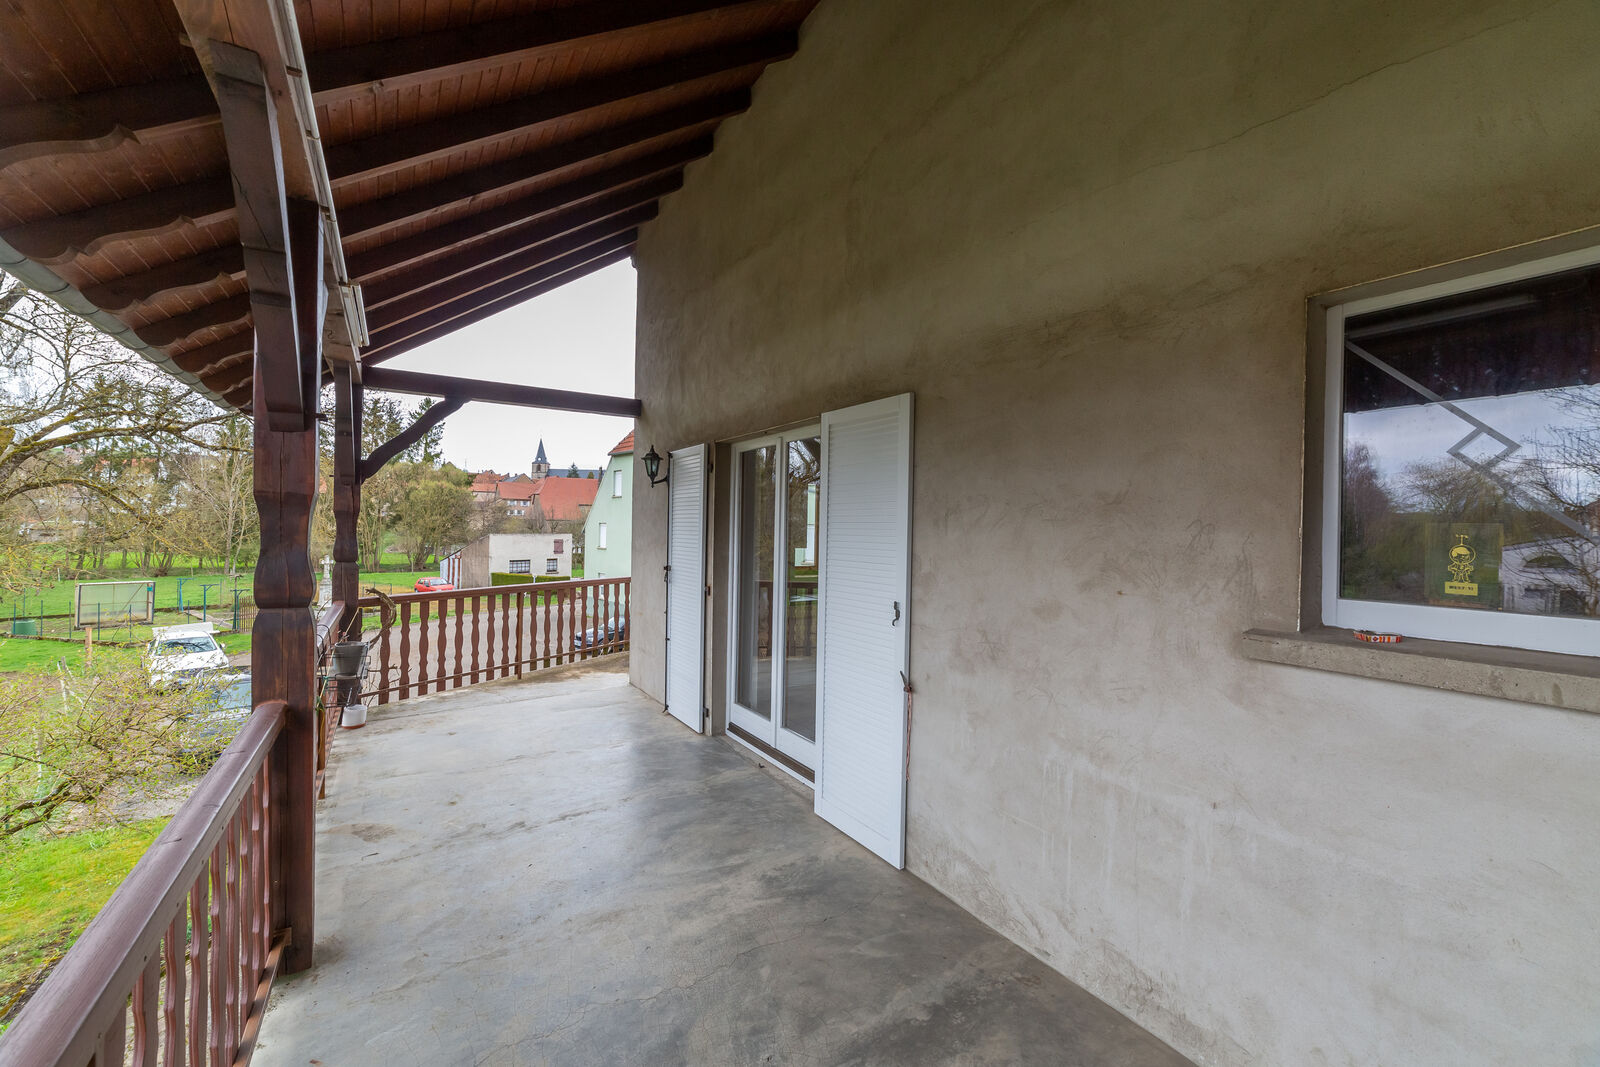 Maison familiale de 240 m² comprenant deux logements - Balcon logement rénové